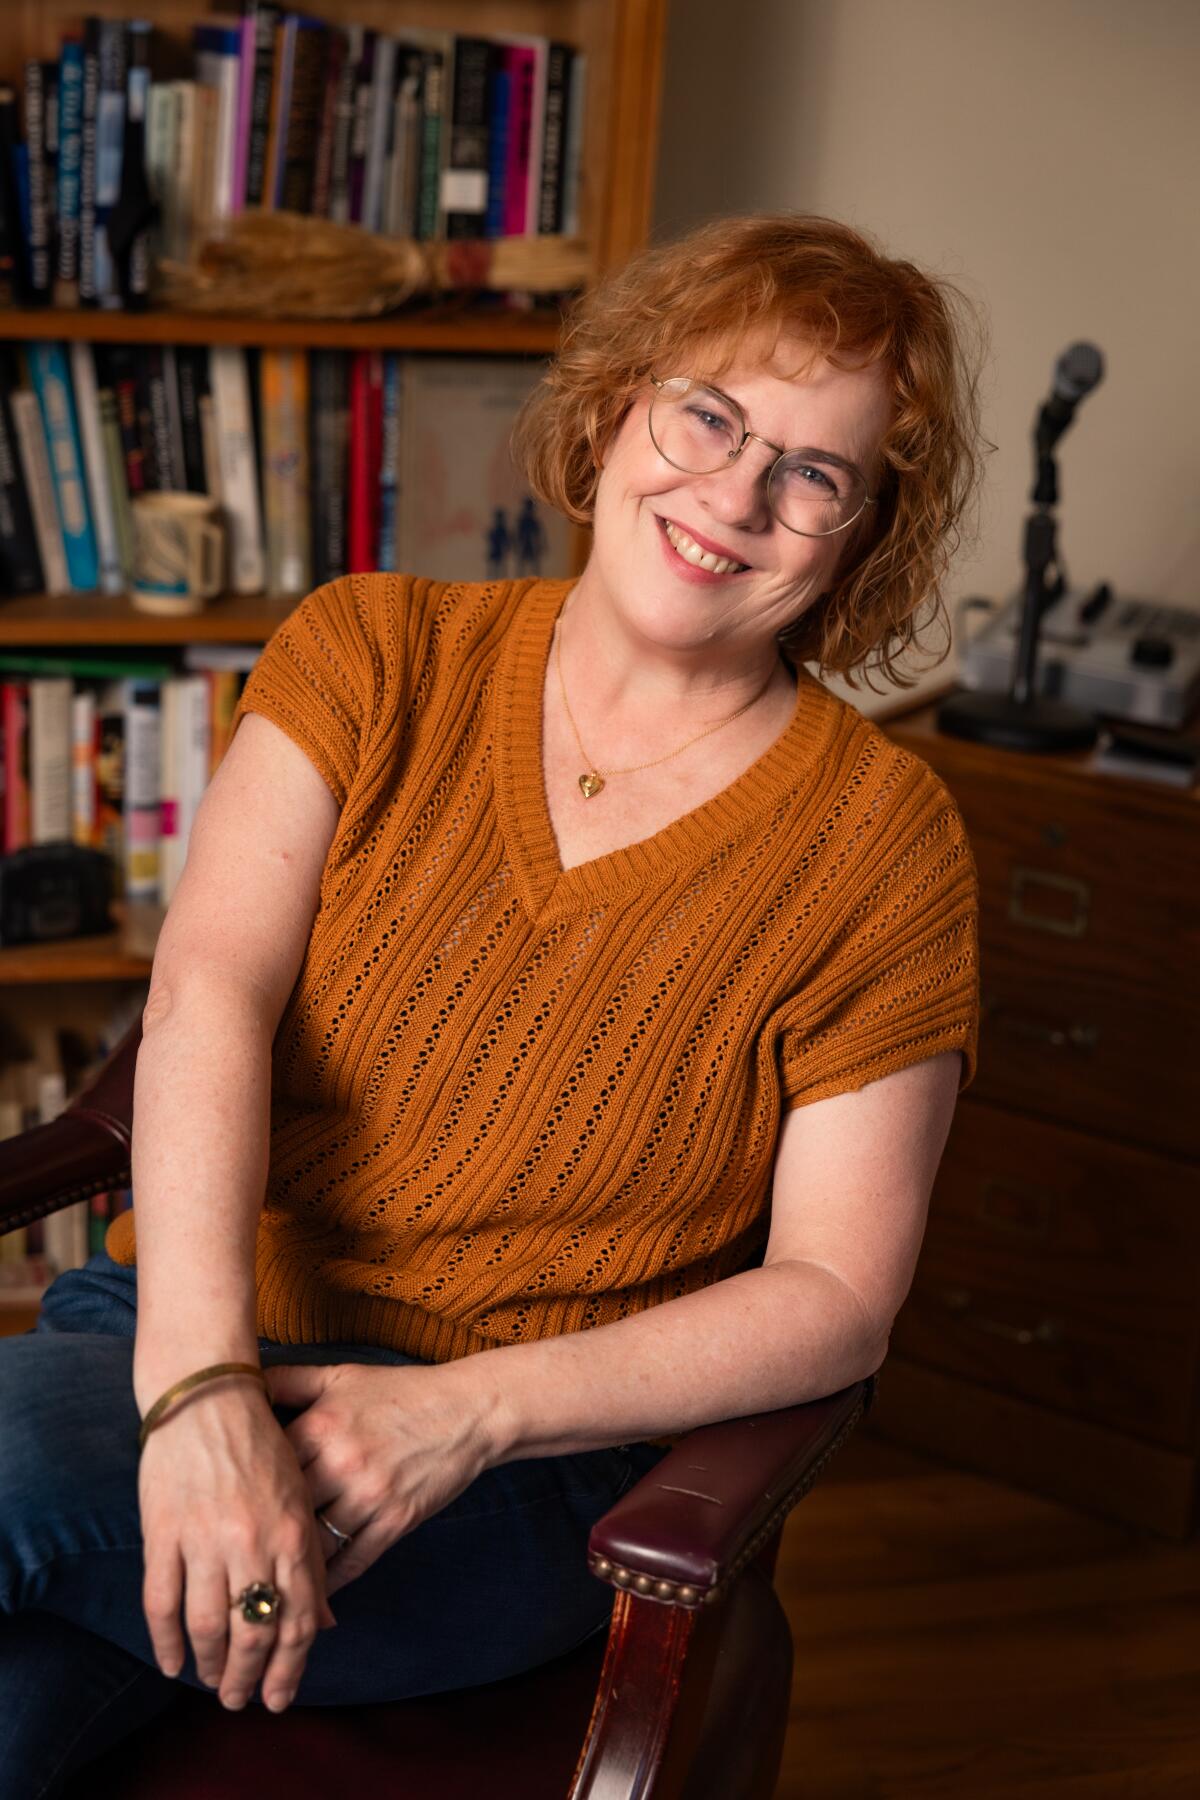 Author Ann Powers